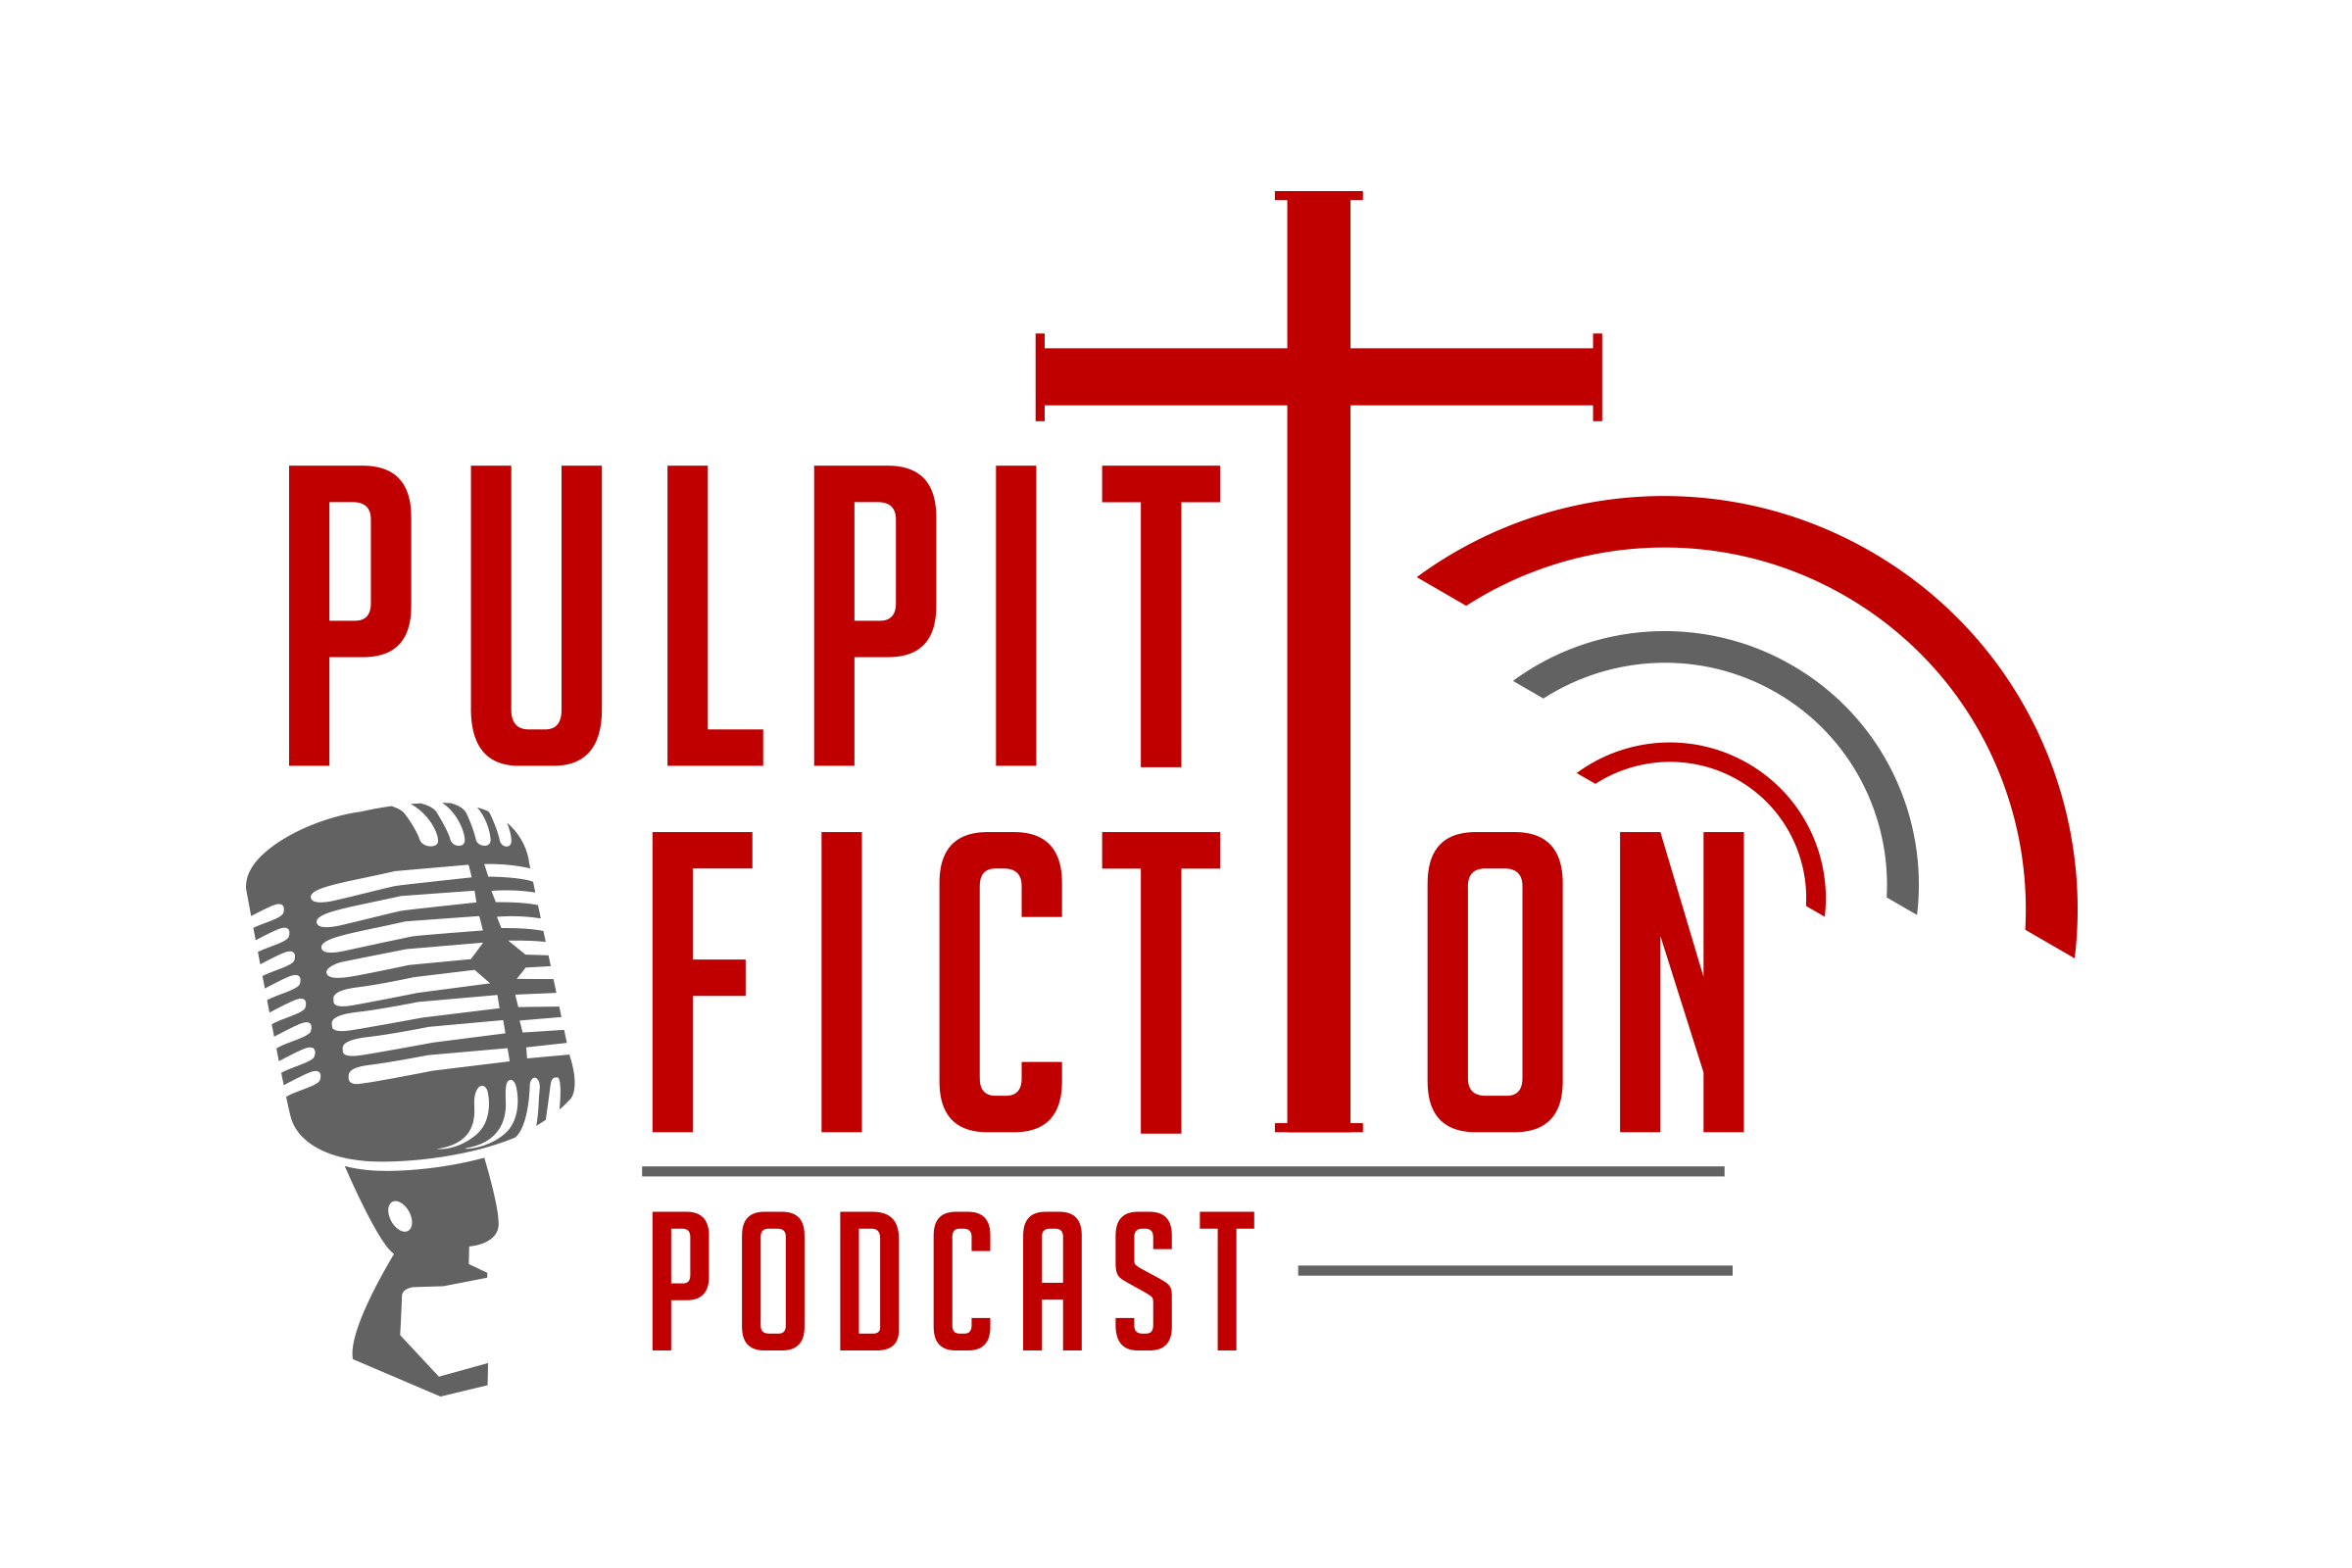 Pulpit Fiction